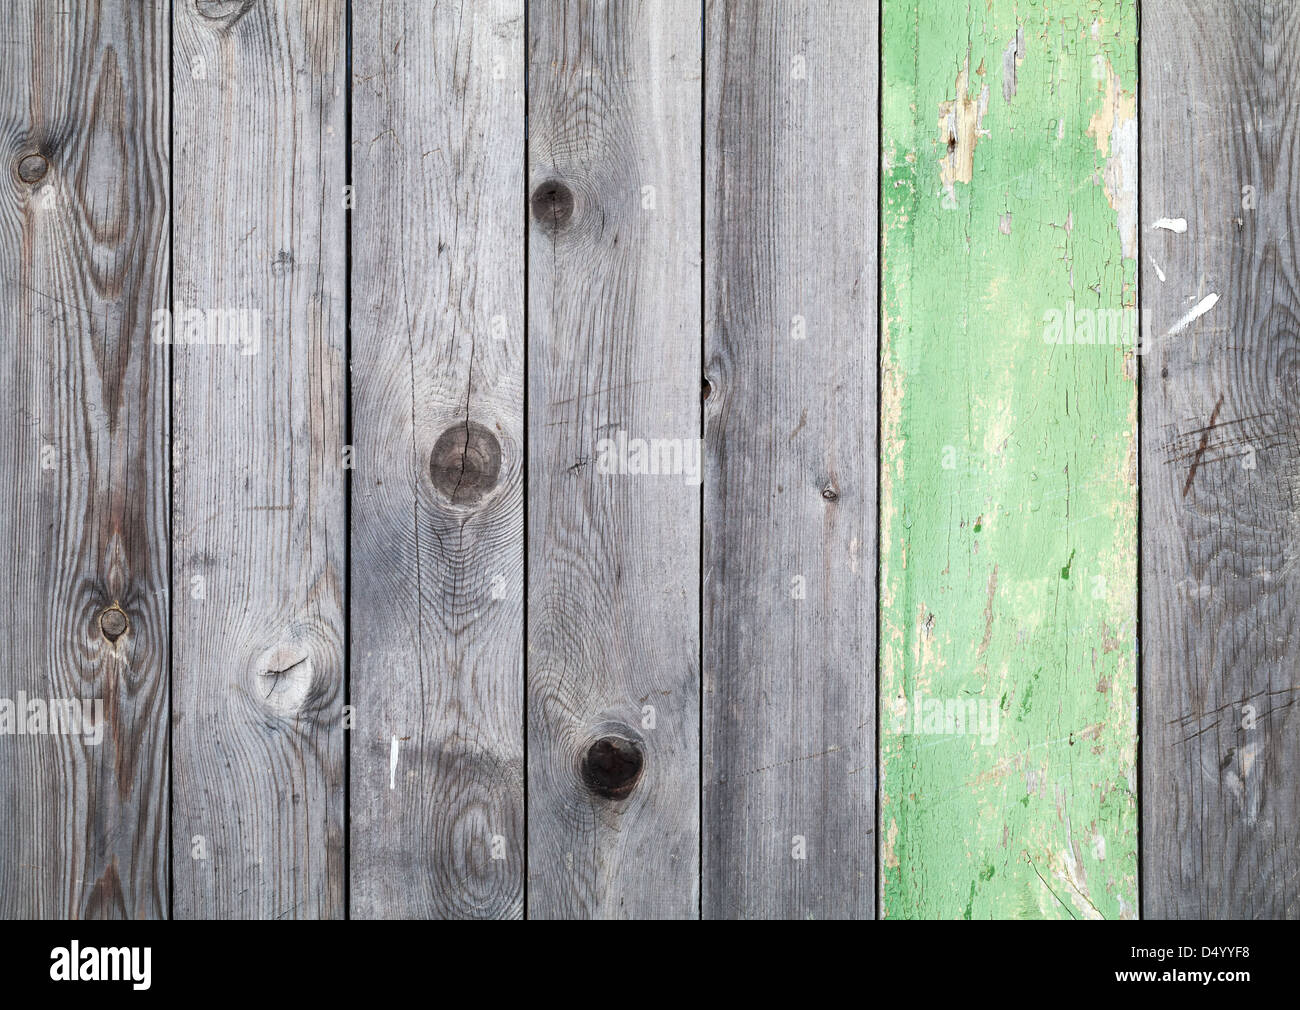 Hintergrundtextur des alten grau verwitterte Holz Futter Bretter mit einem grün lackierten plank Stockfoto